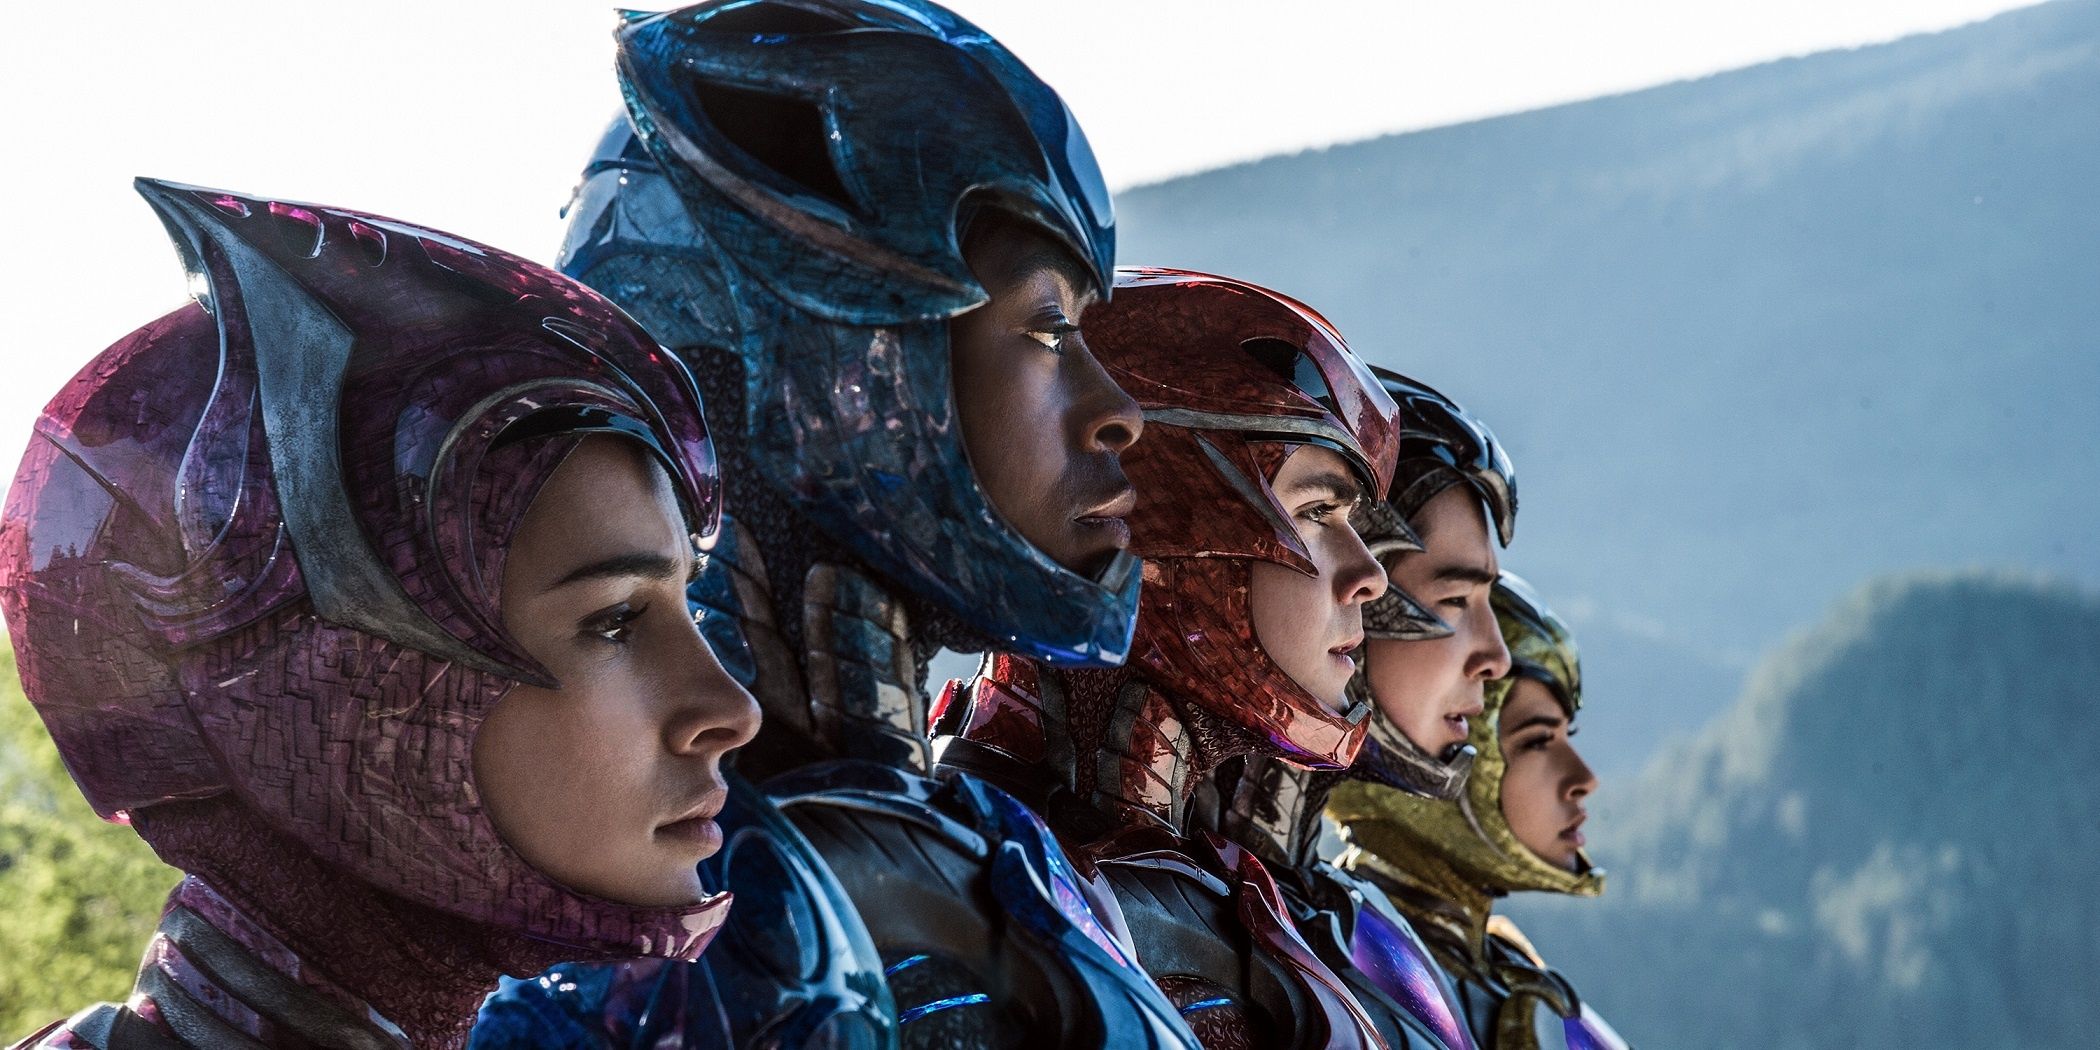 2017 Power Rangers standing in suites with helmet visors open